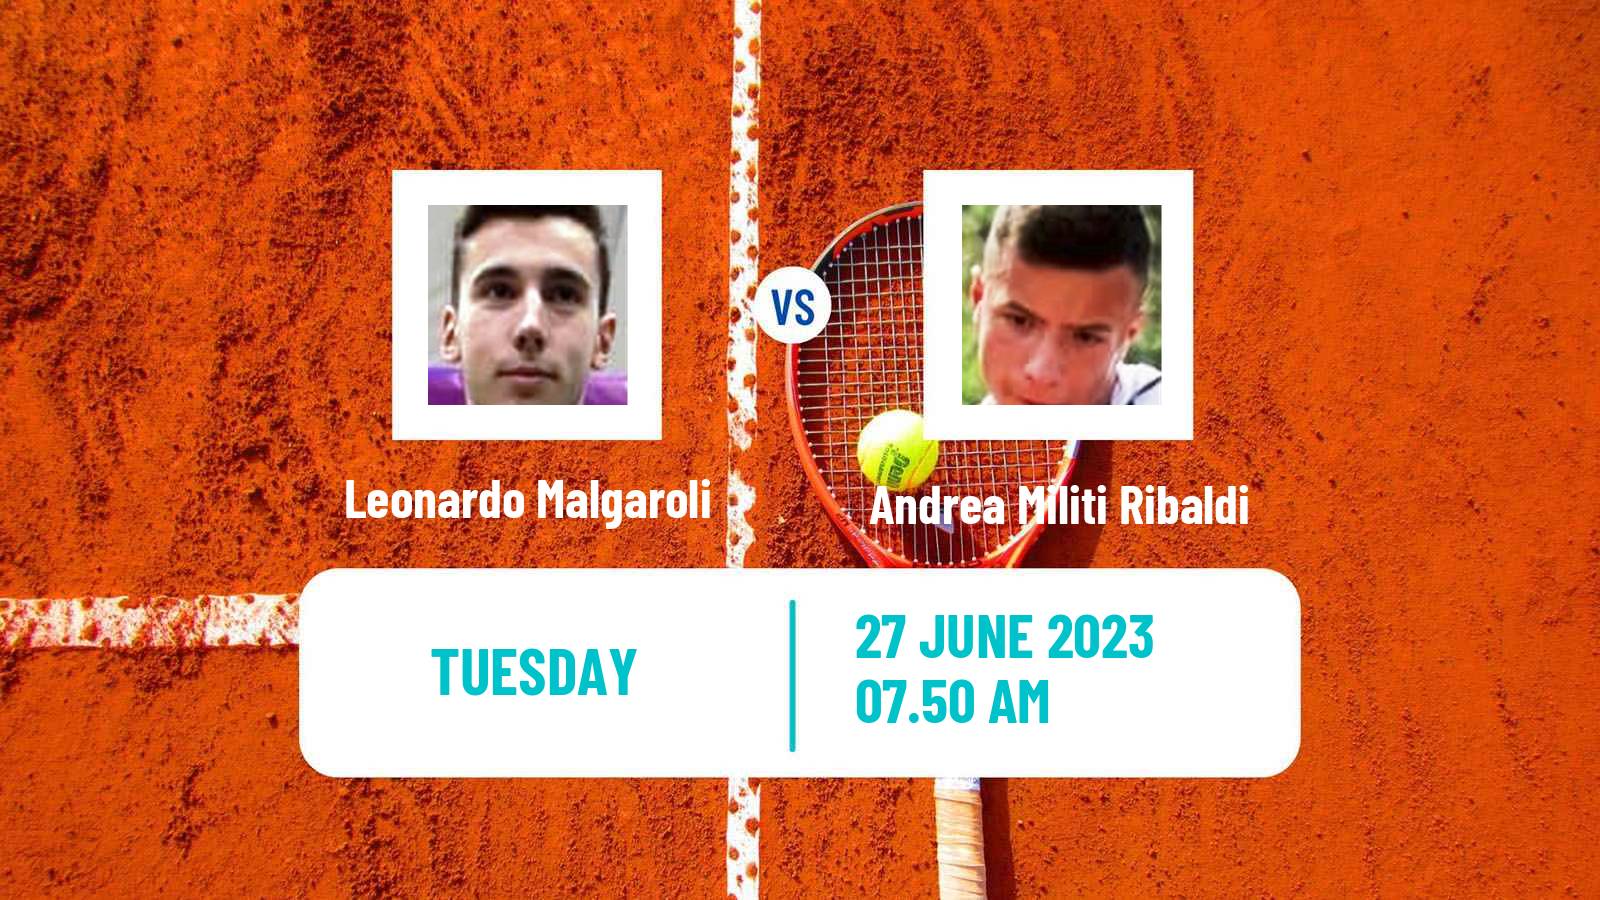 Tennis ITF M15 Bergamo Men Leonardo Malgaroli - Andrea Militi Ribaldi